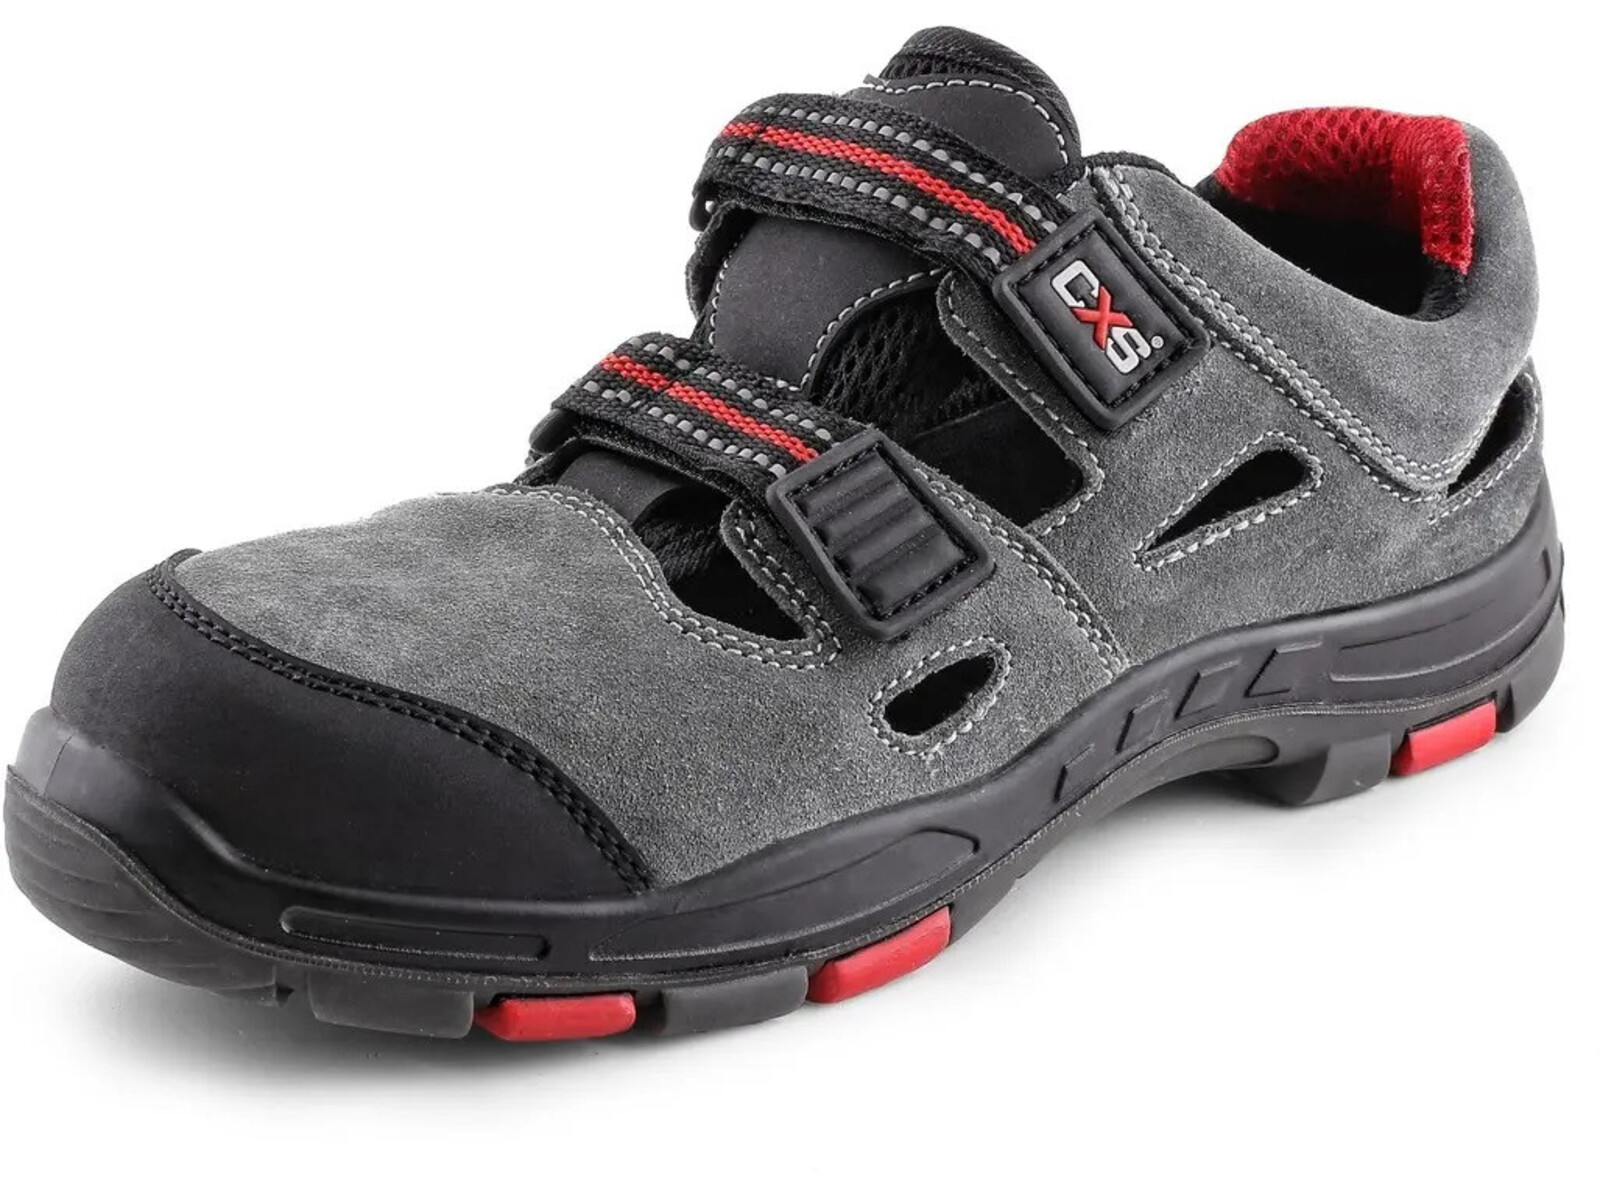 Bezpečnostné sandále CXS Rock Phyllite S1P SRA HRO MF - veľkosť: 40, farba: sivá/červená